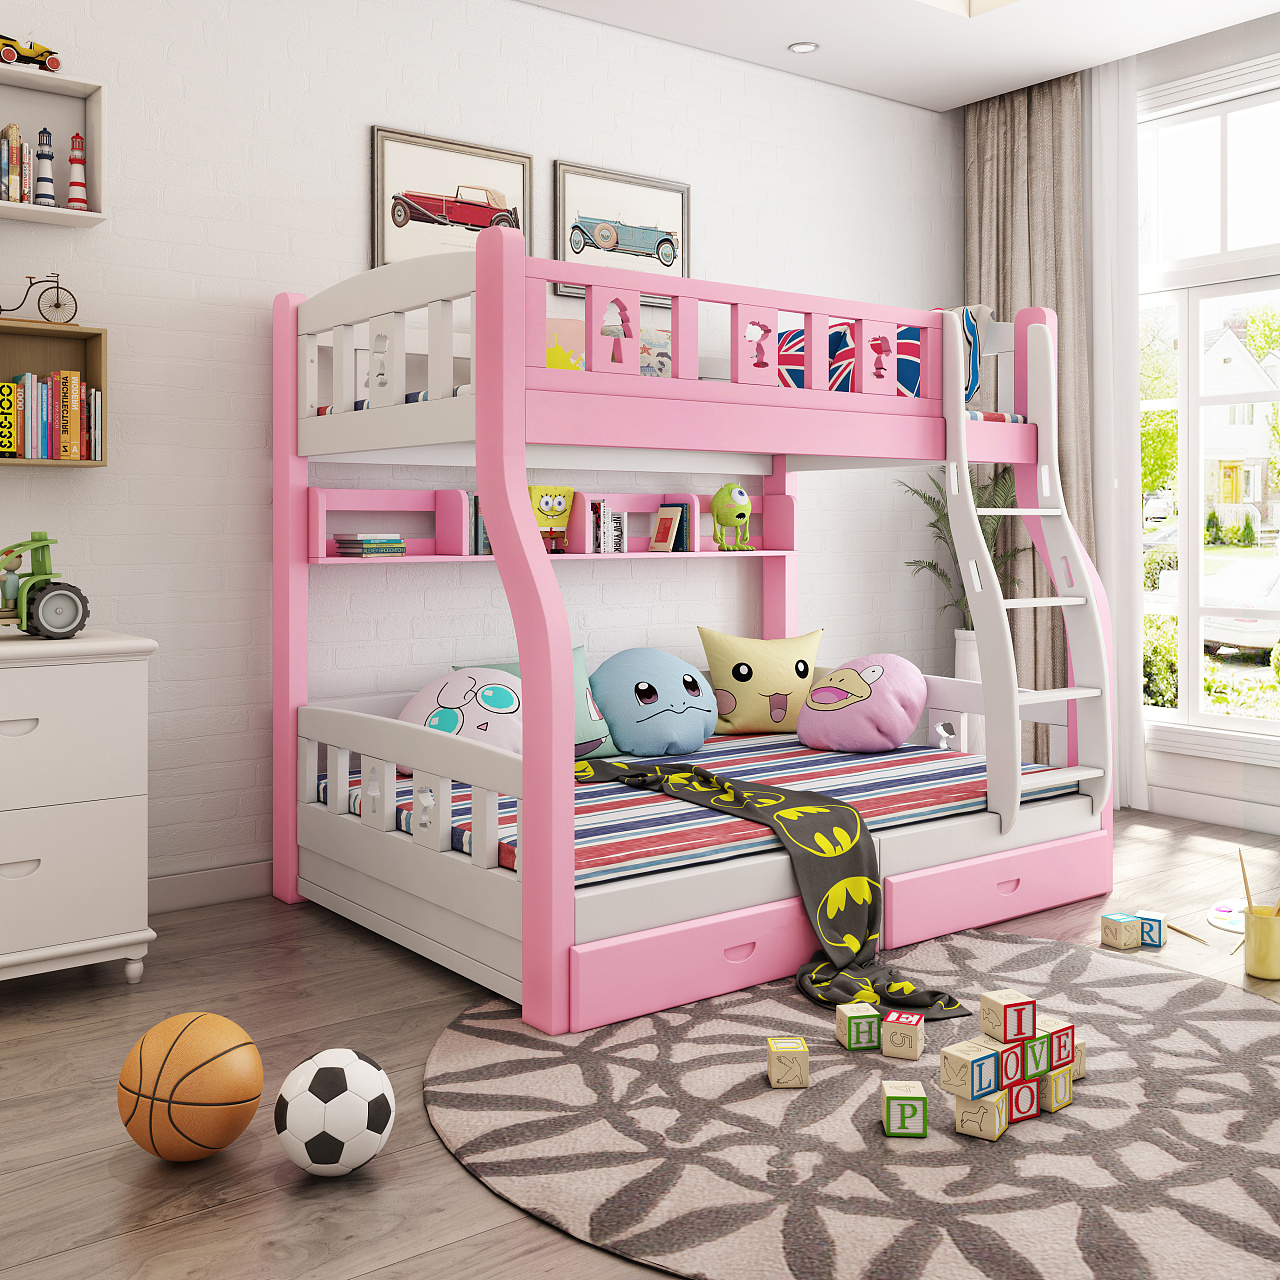 白色现代欧式儿童房高低床装修设计效果图 – 设计本装修效果图